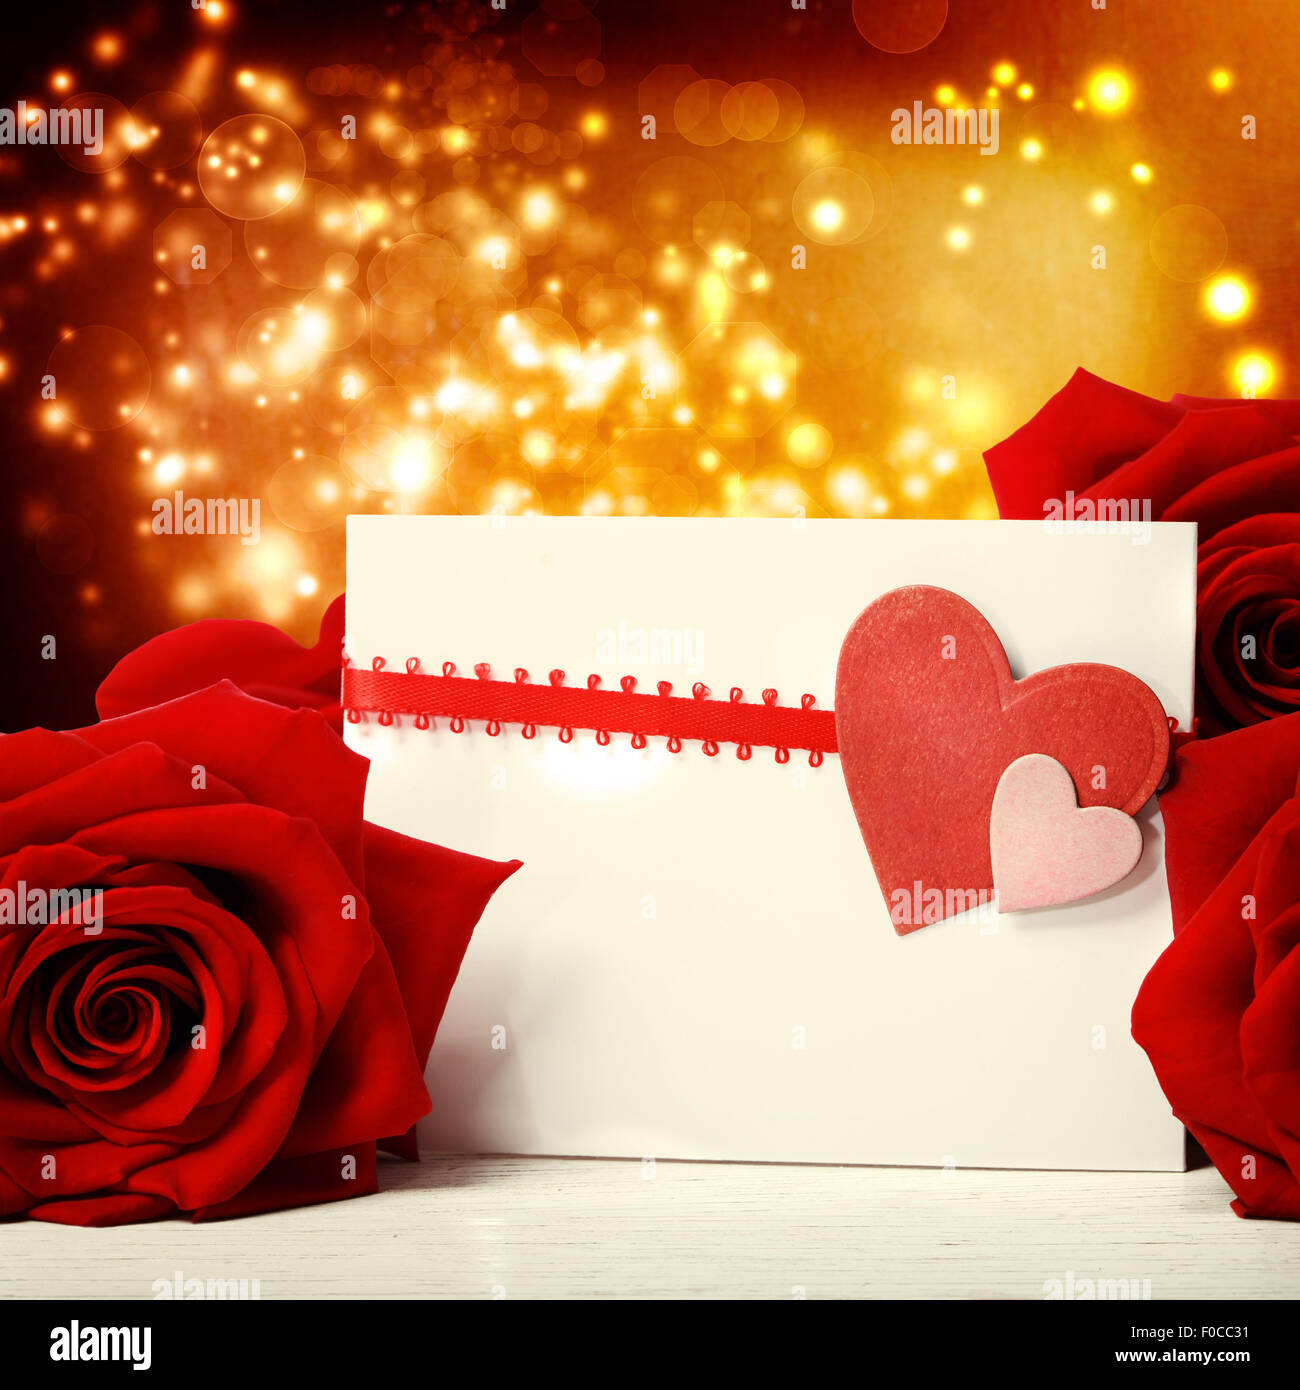 Tarjeta de felicitación de corazones con hermosas rosas rojas sobre fondo de luces abstractas Foto de stock